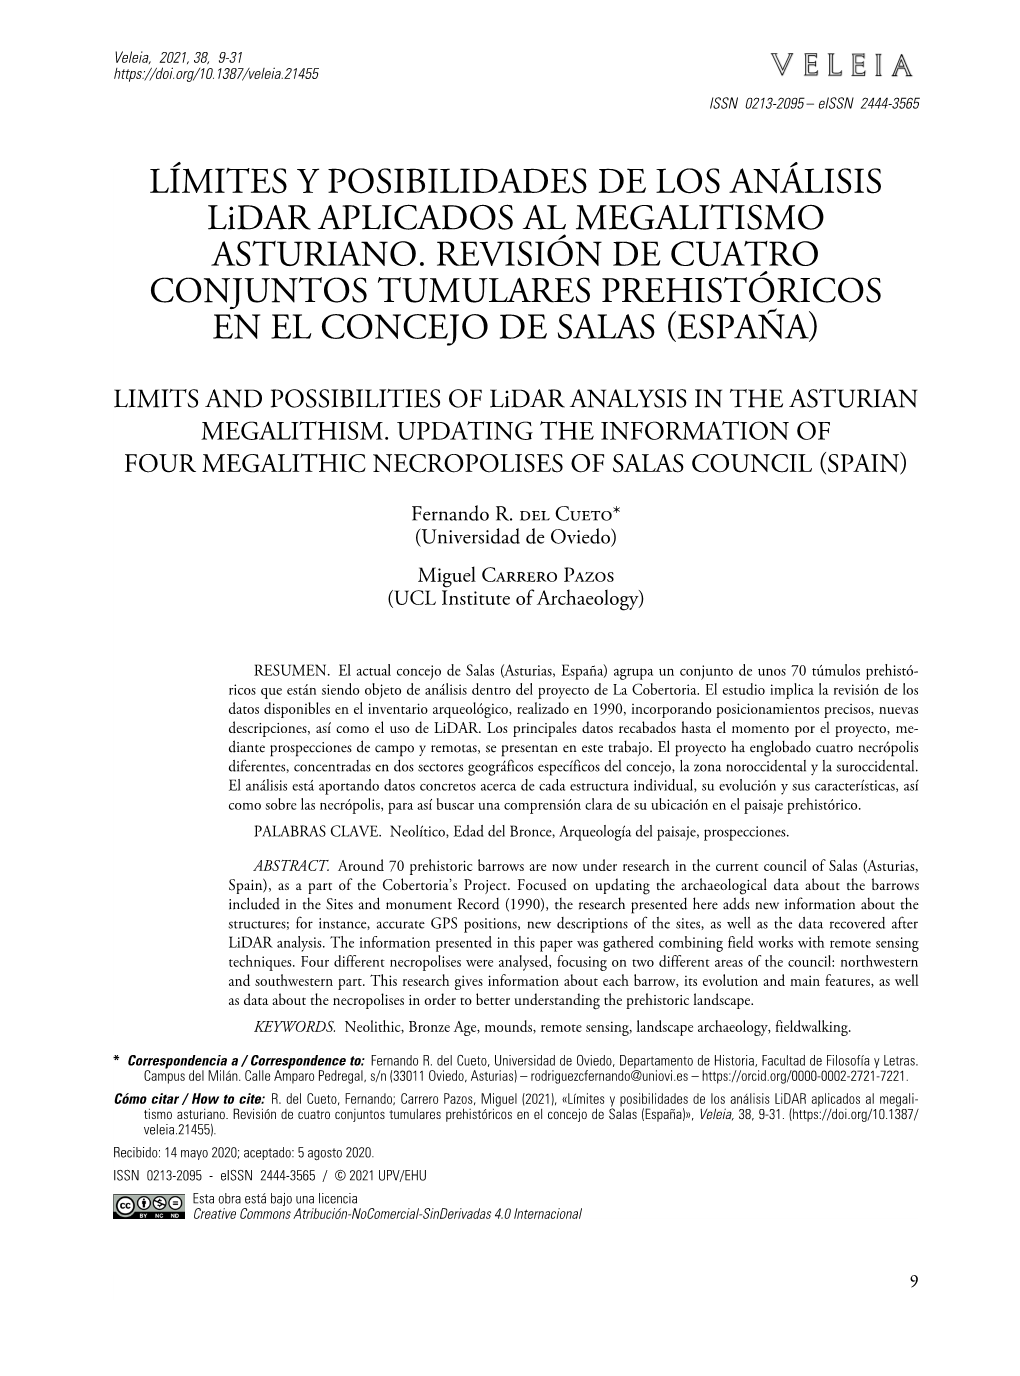 Límites Y Posibilidades De Los Análisis Lidar Aplicados Al Megalitismo Asturiano